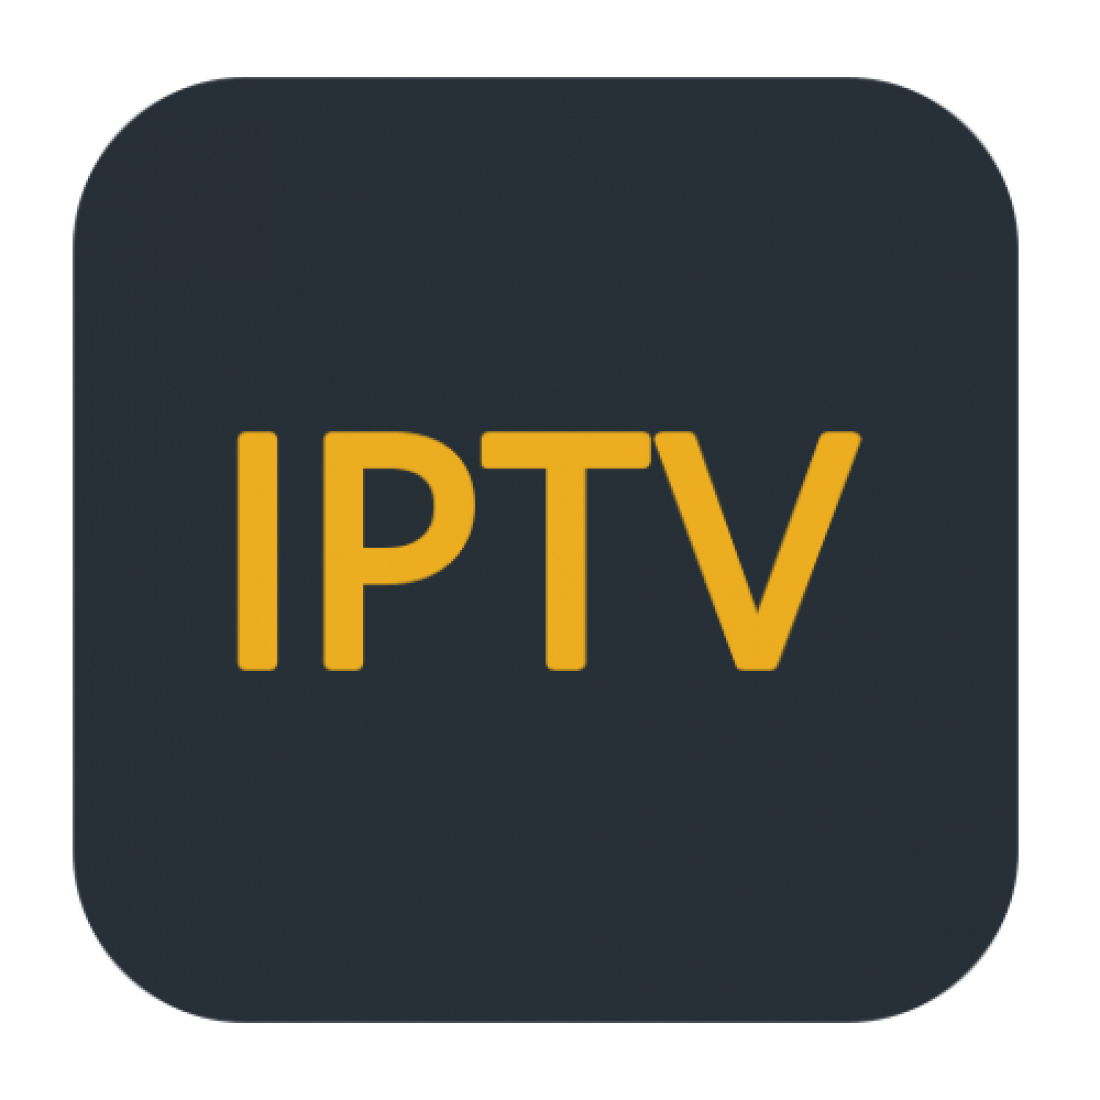 Канал playlist. IPTV. Логотип IPTV. IPTV картинки. Ярлык IPTV.